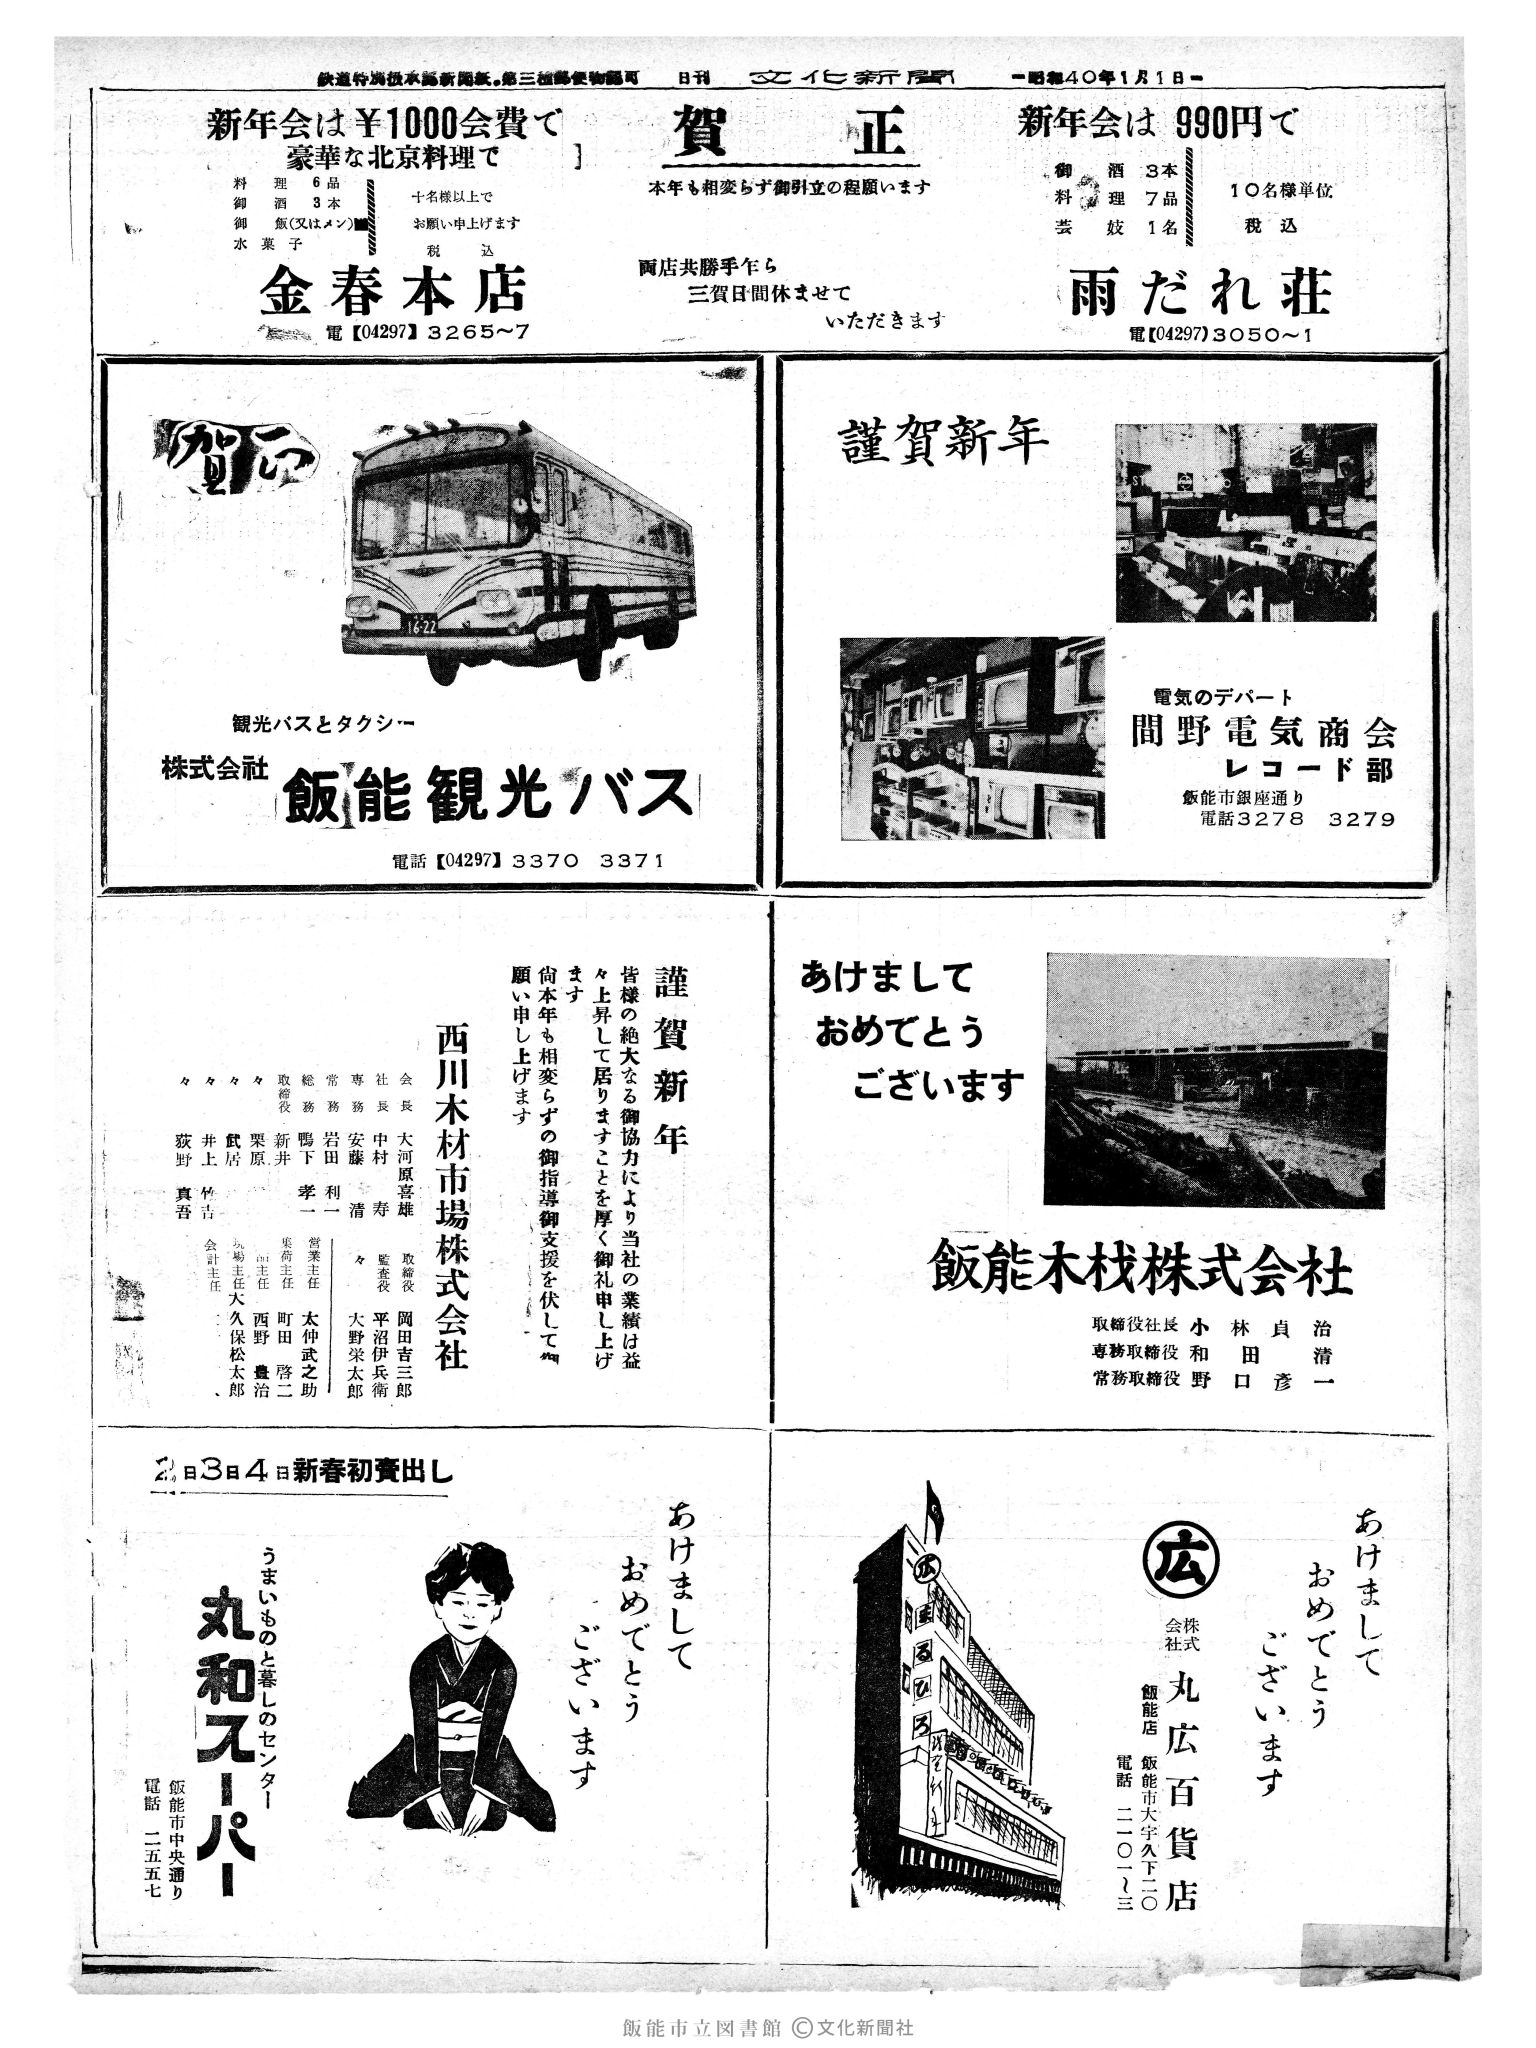 昭和40年1月1日4面 (第4960号) 広告ページ